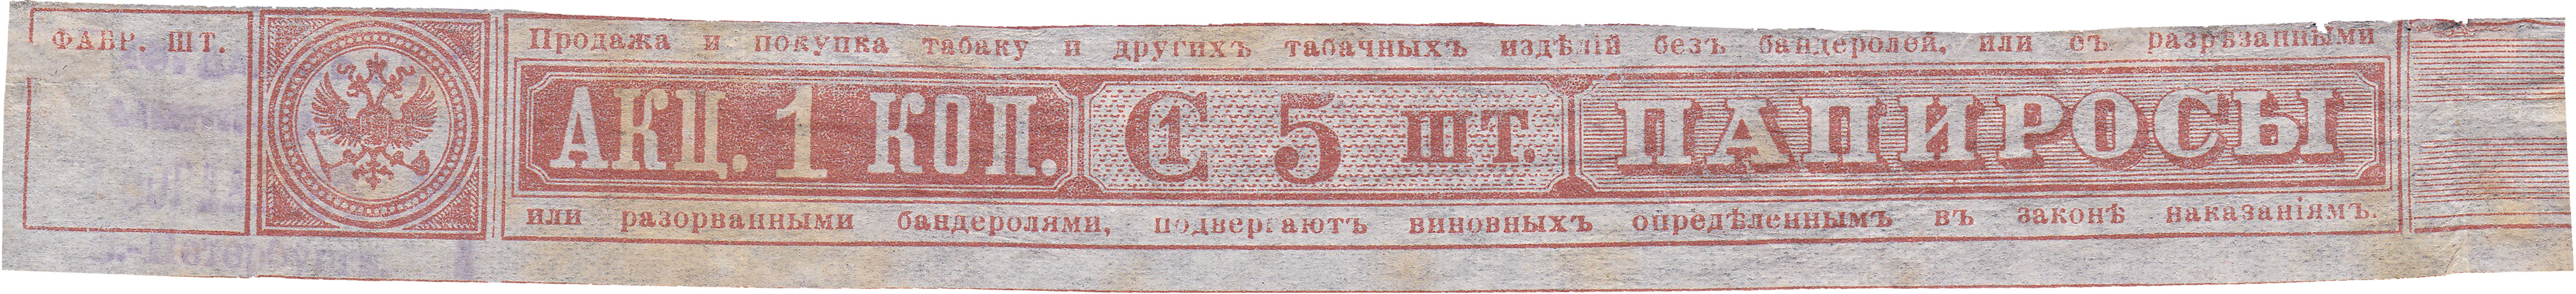 Акцизная бандерольная лента на папиросы 1-го сорта 5 шт акциз 1 Копейка 1891 год. Российская Империя